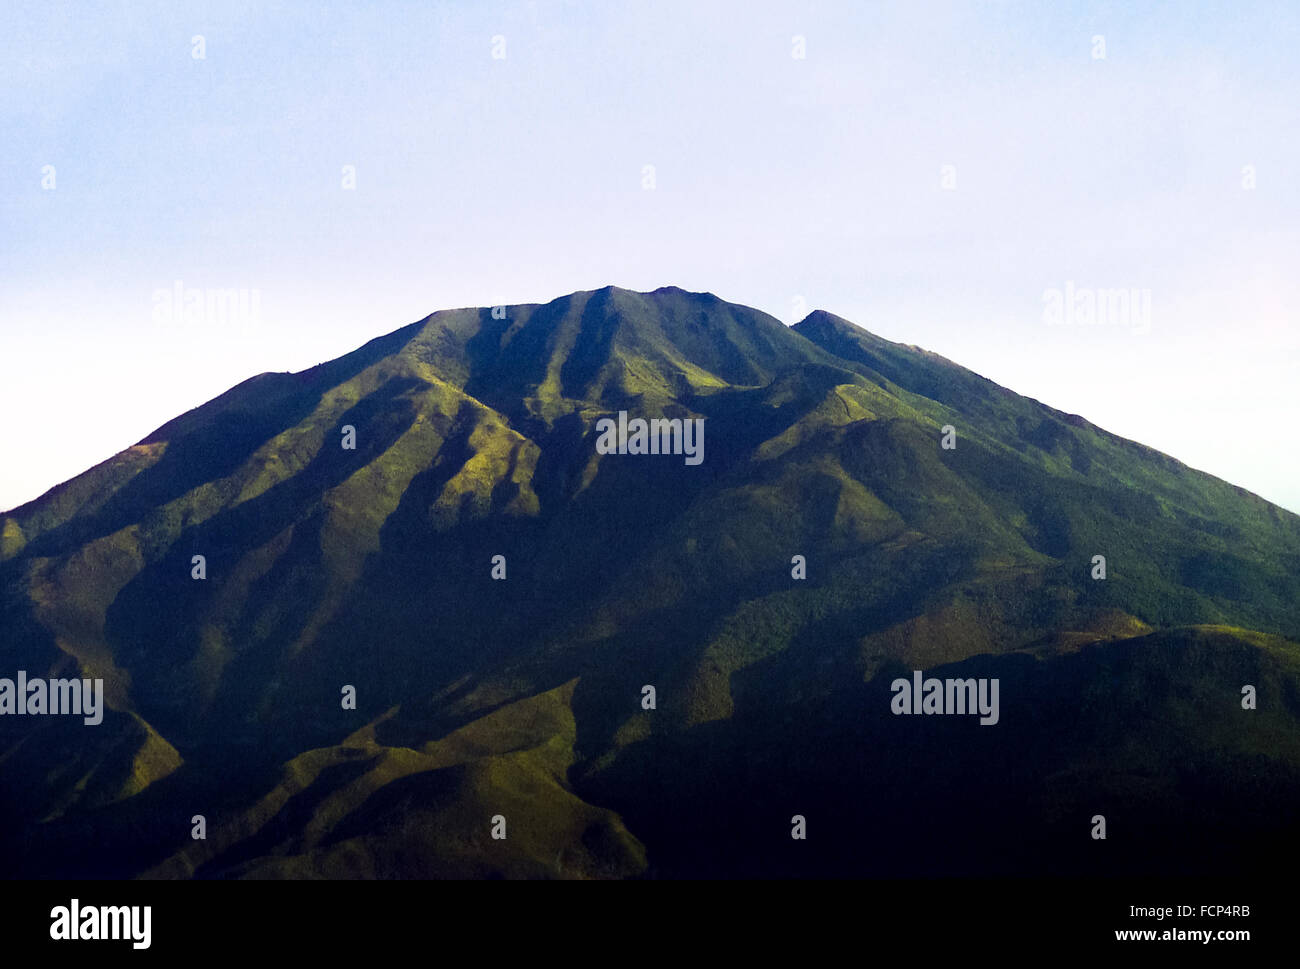 Der Berg Merbabu ist vom Hang des Vulkans Mount Merapi in Selo, Boyolali, Zentral-Java, Indonesien, aus zu sehen. Stockfoto